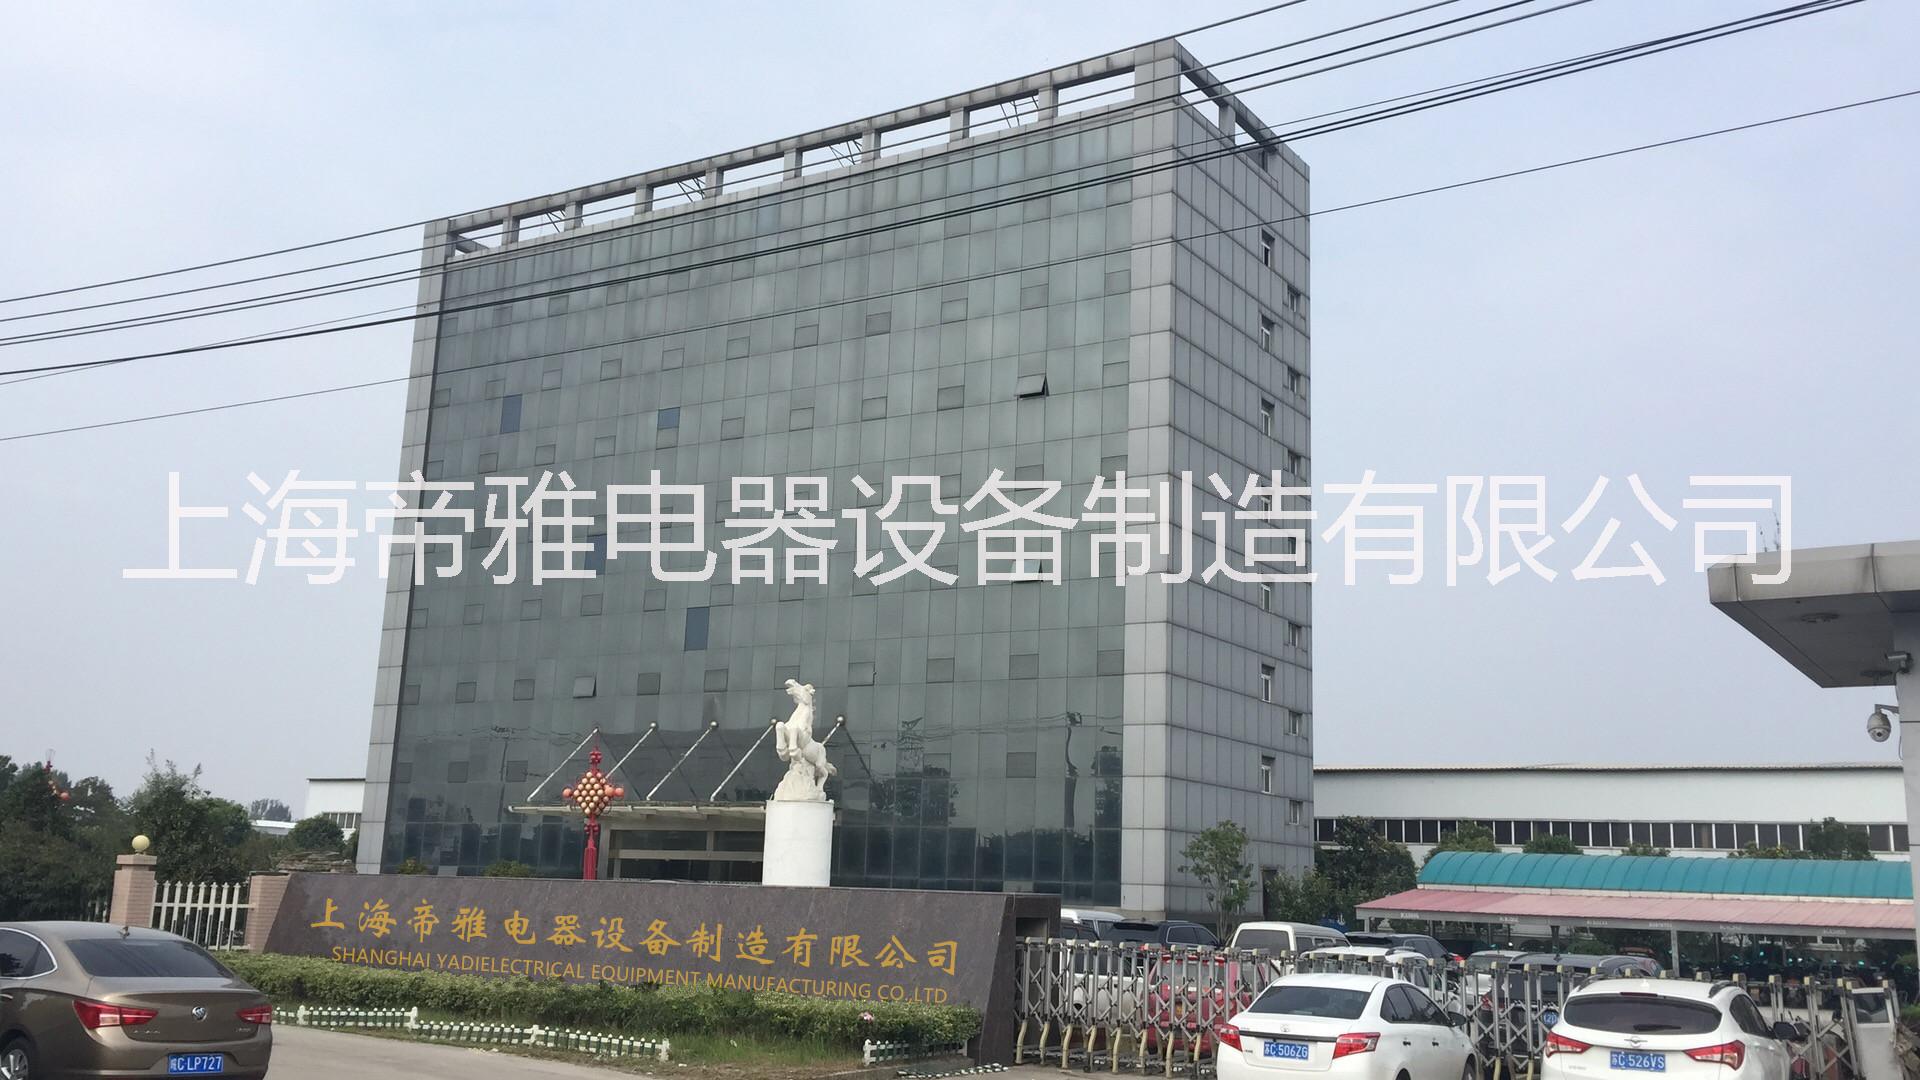 上海帝雅电器设备制造有限公司